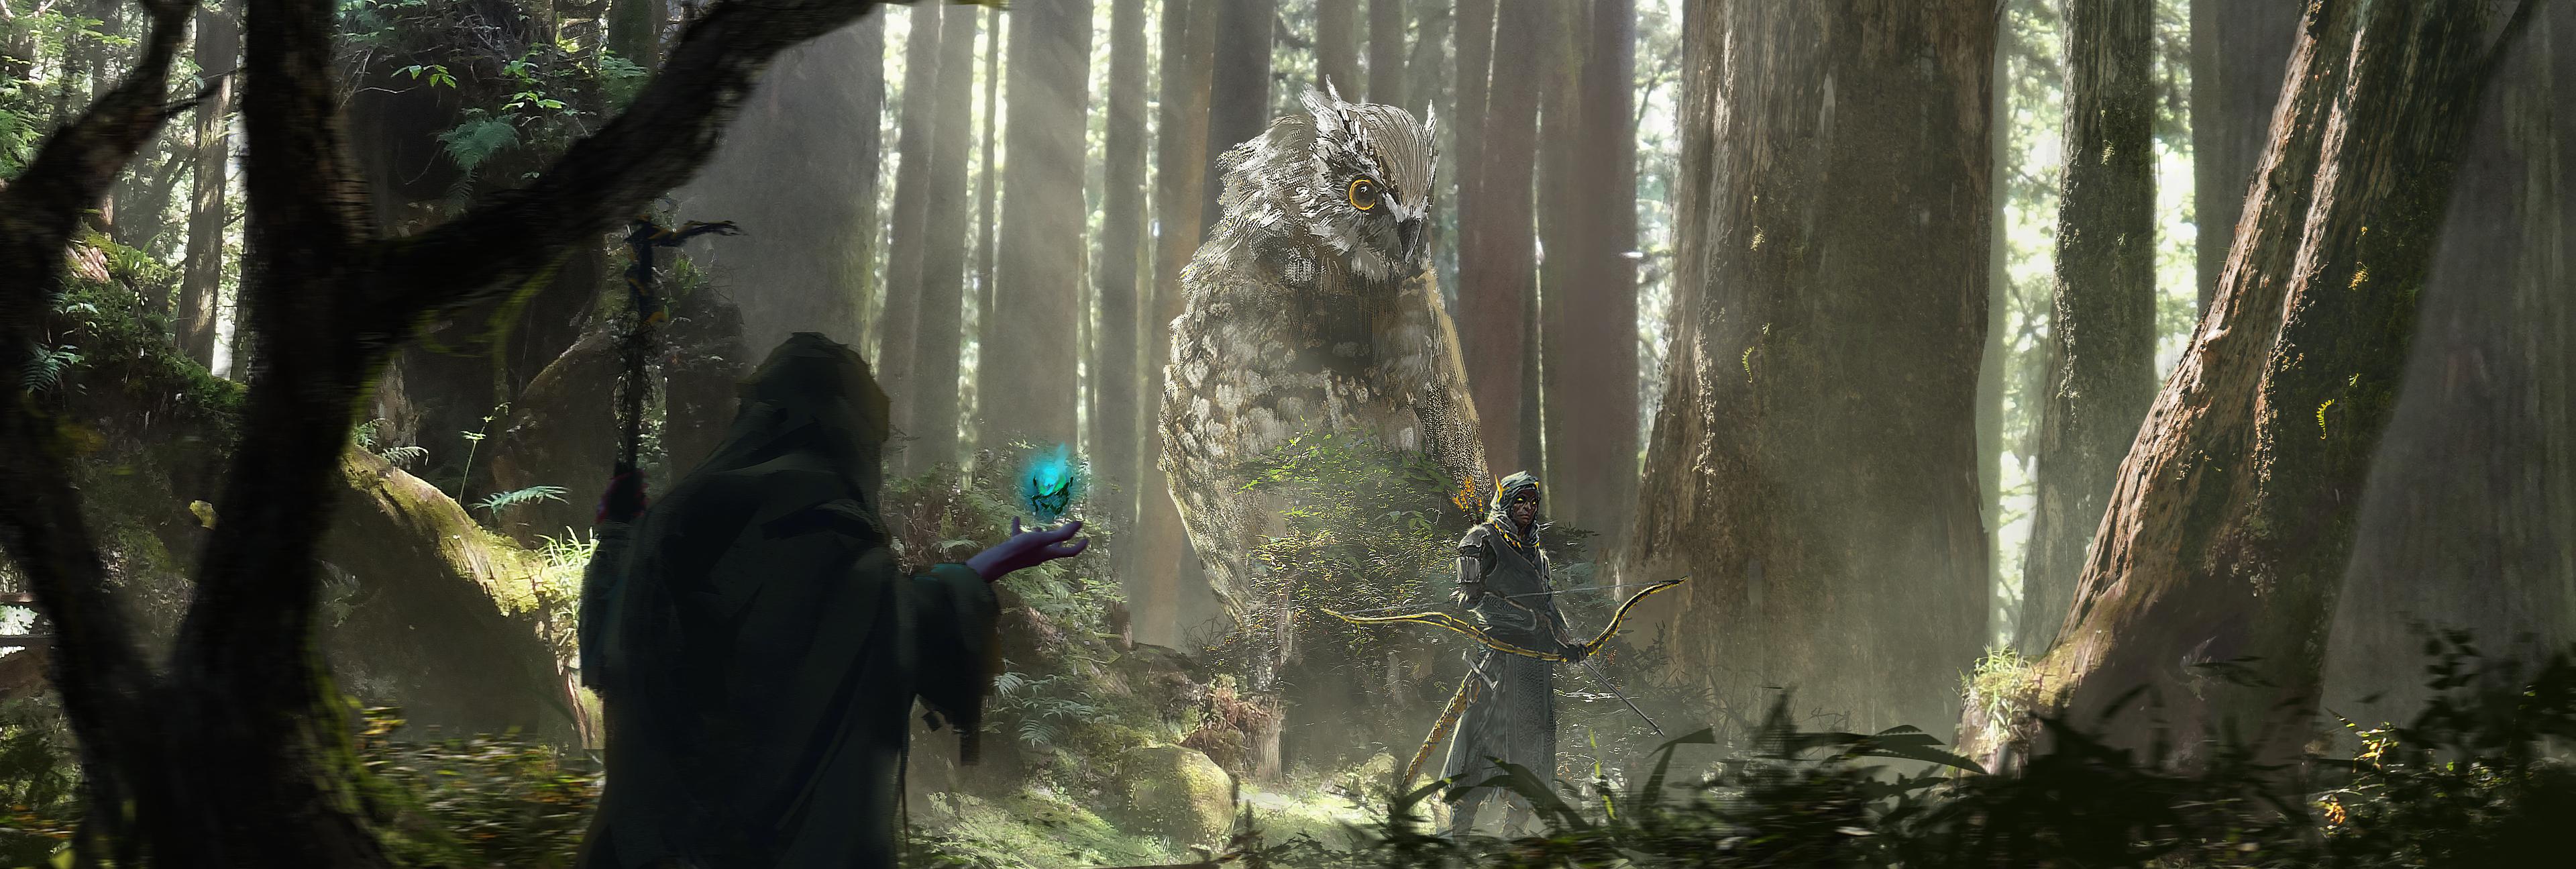 General 3840x1295 GGAC SHANGHAI owl forest fantasy art wizard archer digital art